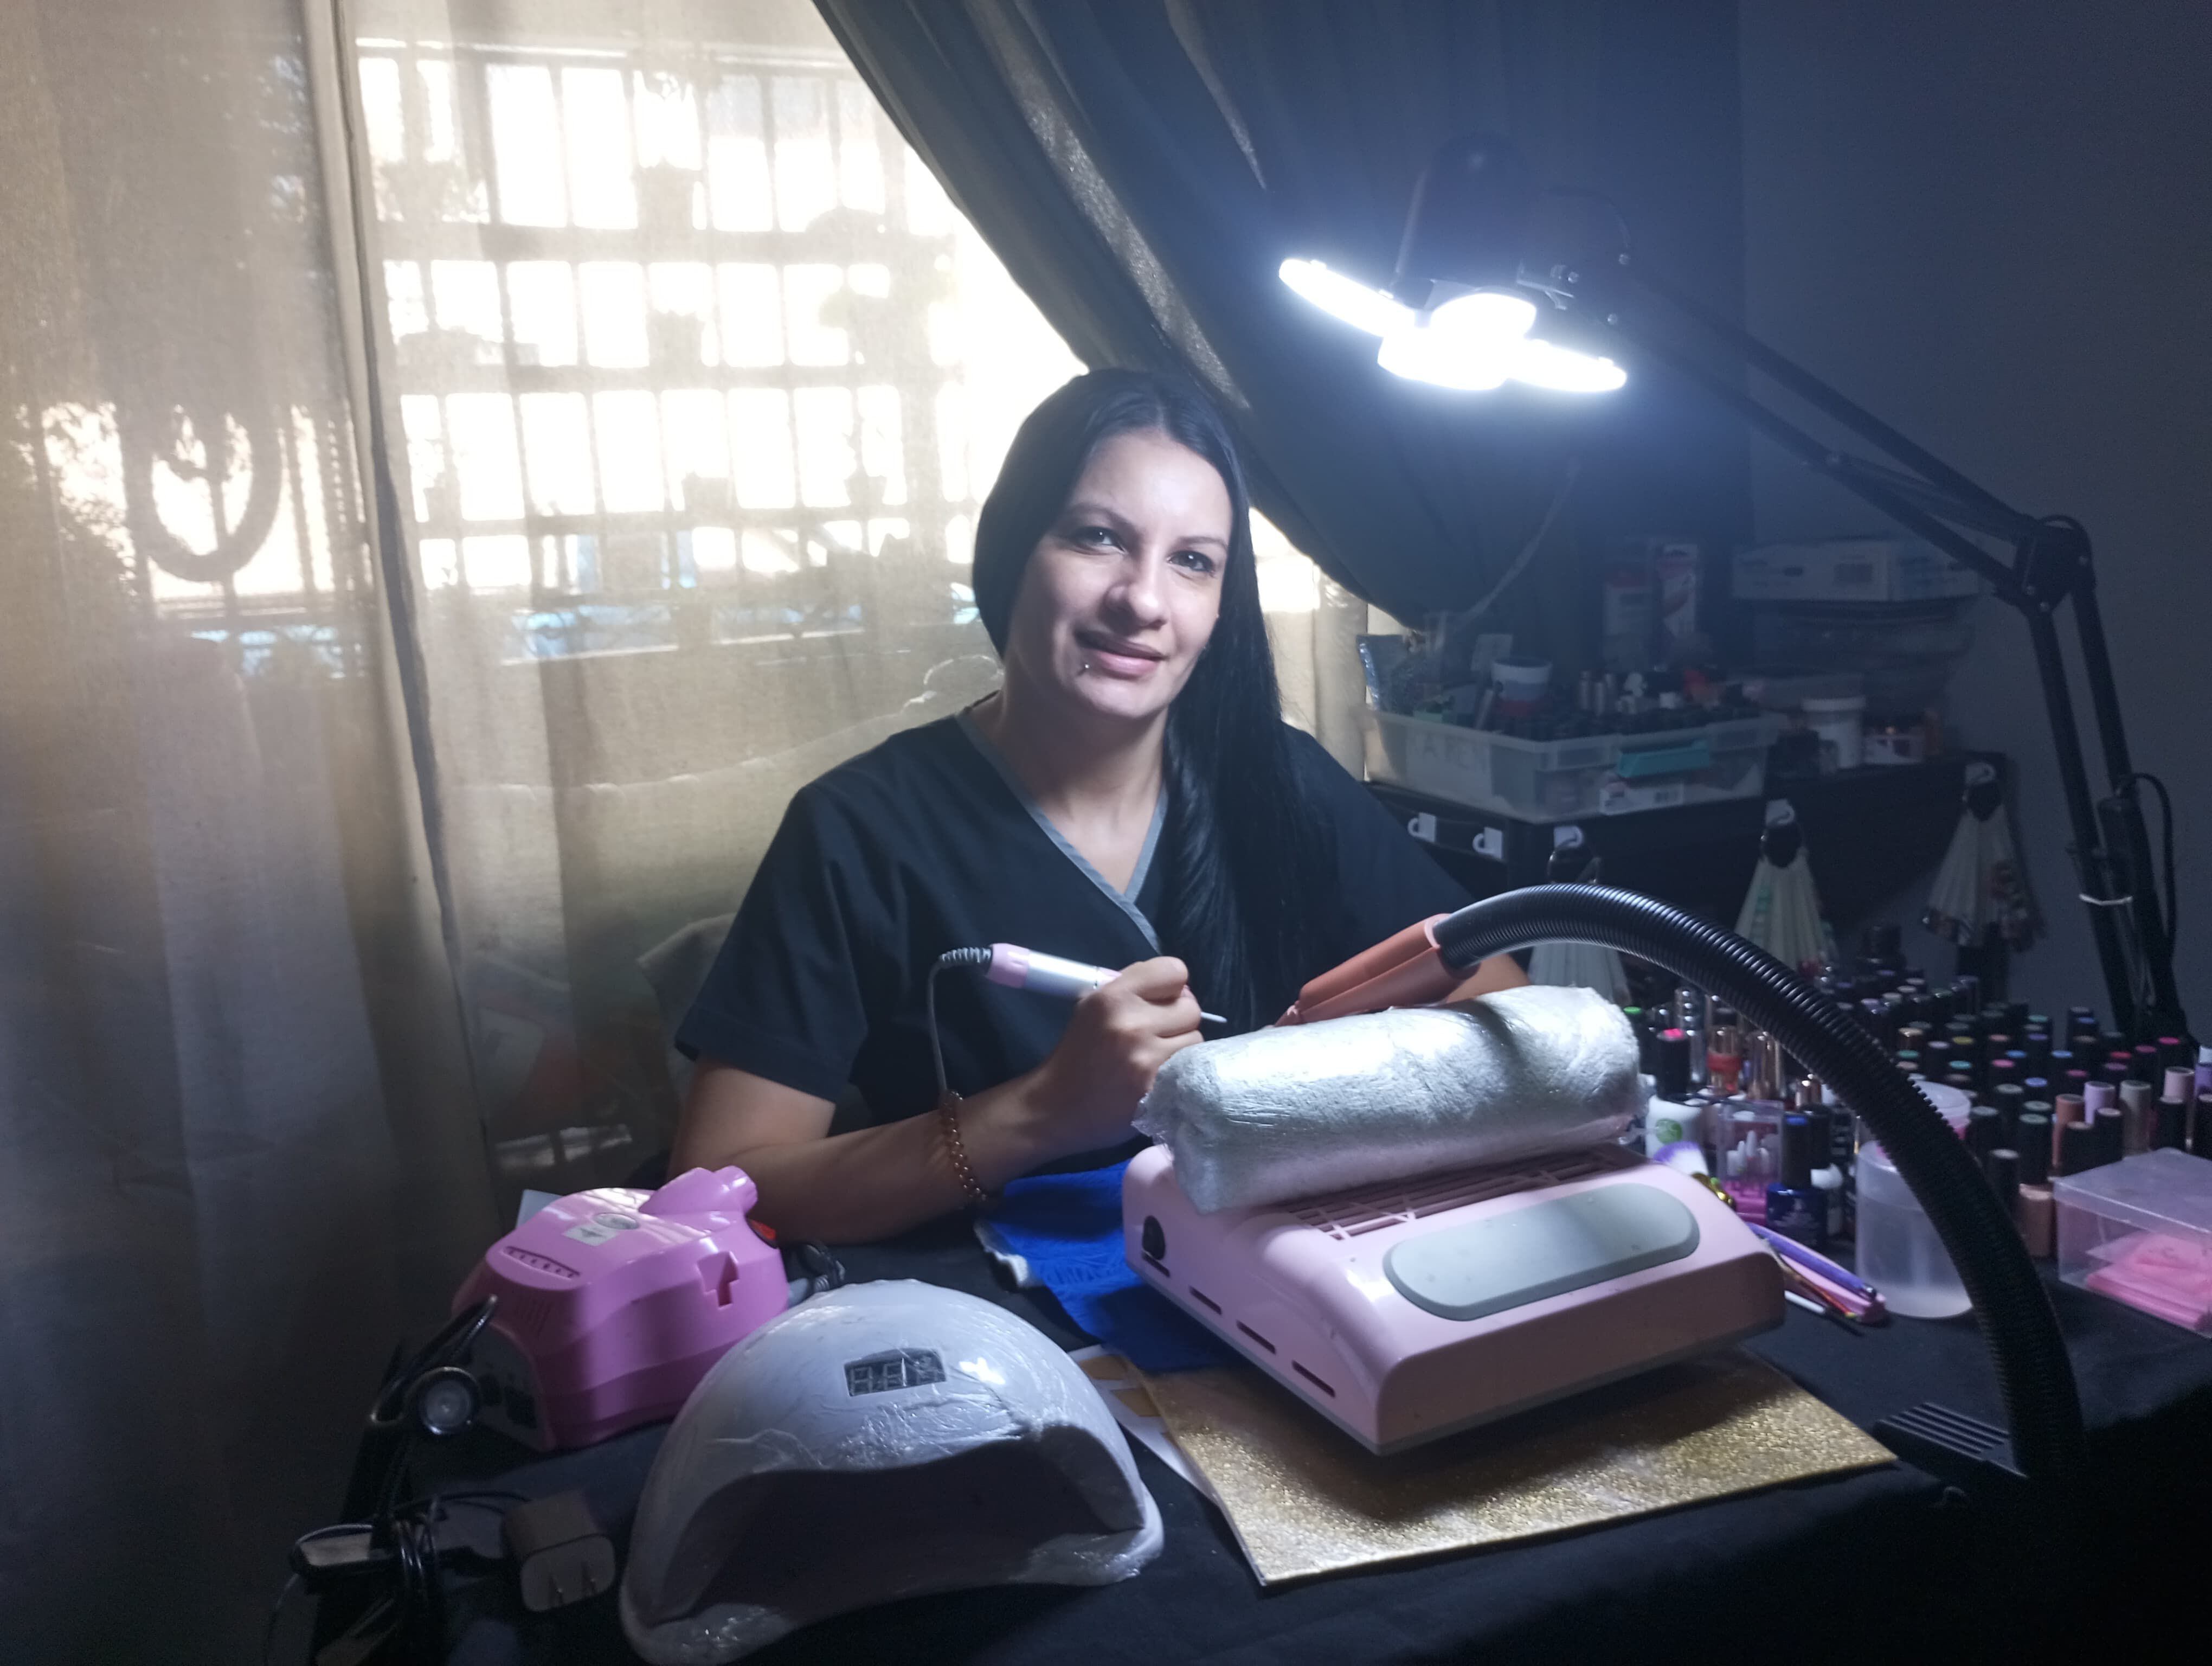 Karen Aguilar, de 34 años y vecina de Desamparados, se dedica a la manicura desde su hogar. Nunca ha solicitado un crédito para su microempresa, y señala que el equipo necesario lo ha ido comprando poco a poco, con ahorros.